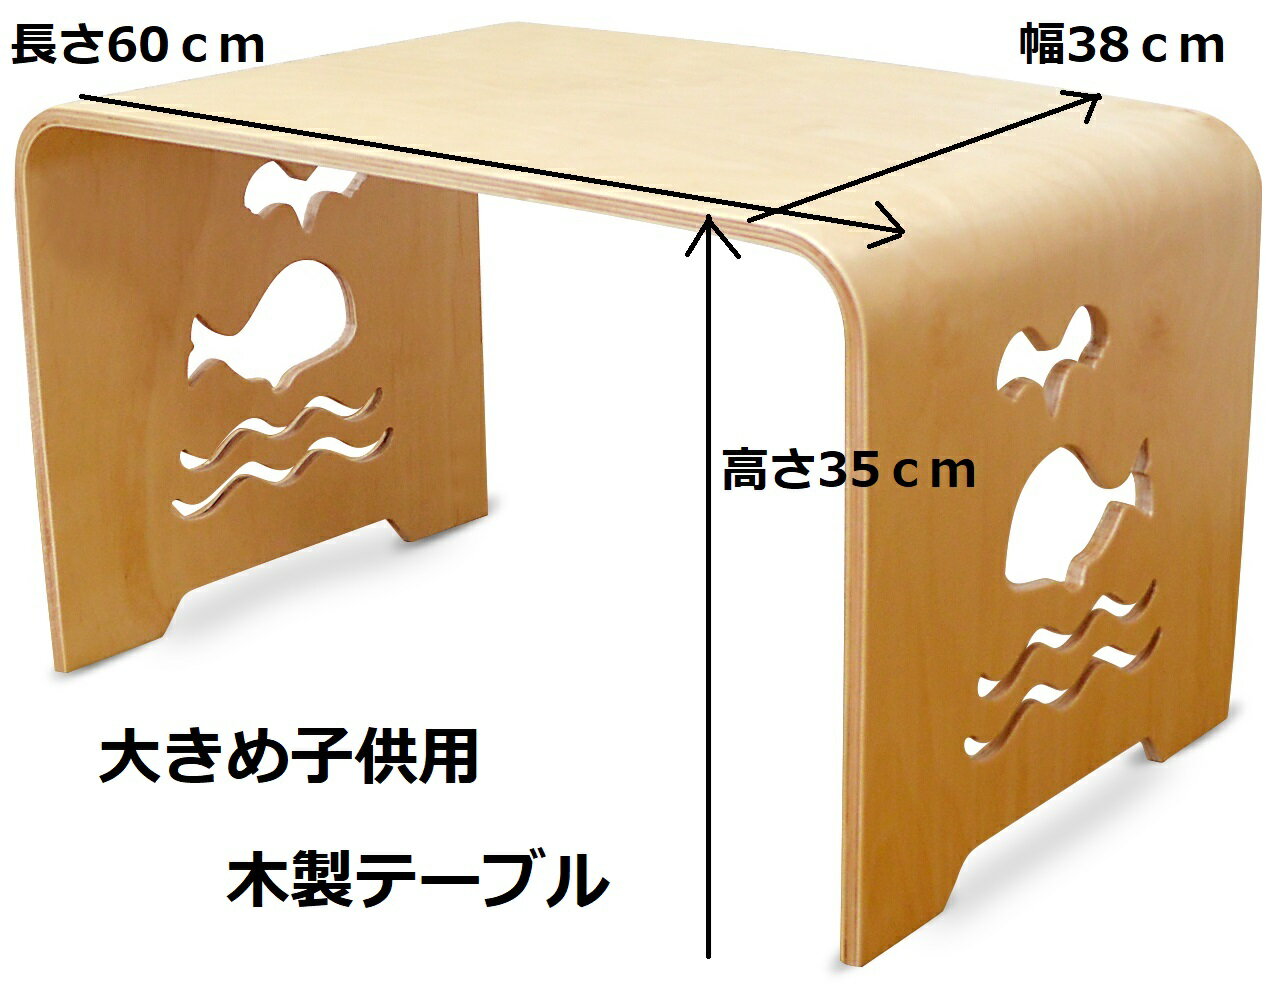 「組立不要」わけあり！MAMENCHI サイズ大き目な子供用木製テーブル クジラ ナチュラル 組立不要で届いてからすぐに使用ができます。（サイズ：長60×幅38×高さ35cm)テーブルセット子供机 ファースト家具 学習デスク 木製テーブル 机 幼児机　キッズテーブル